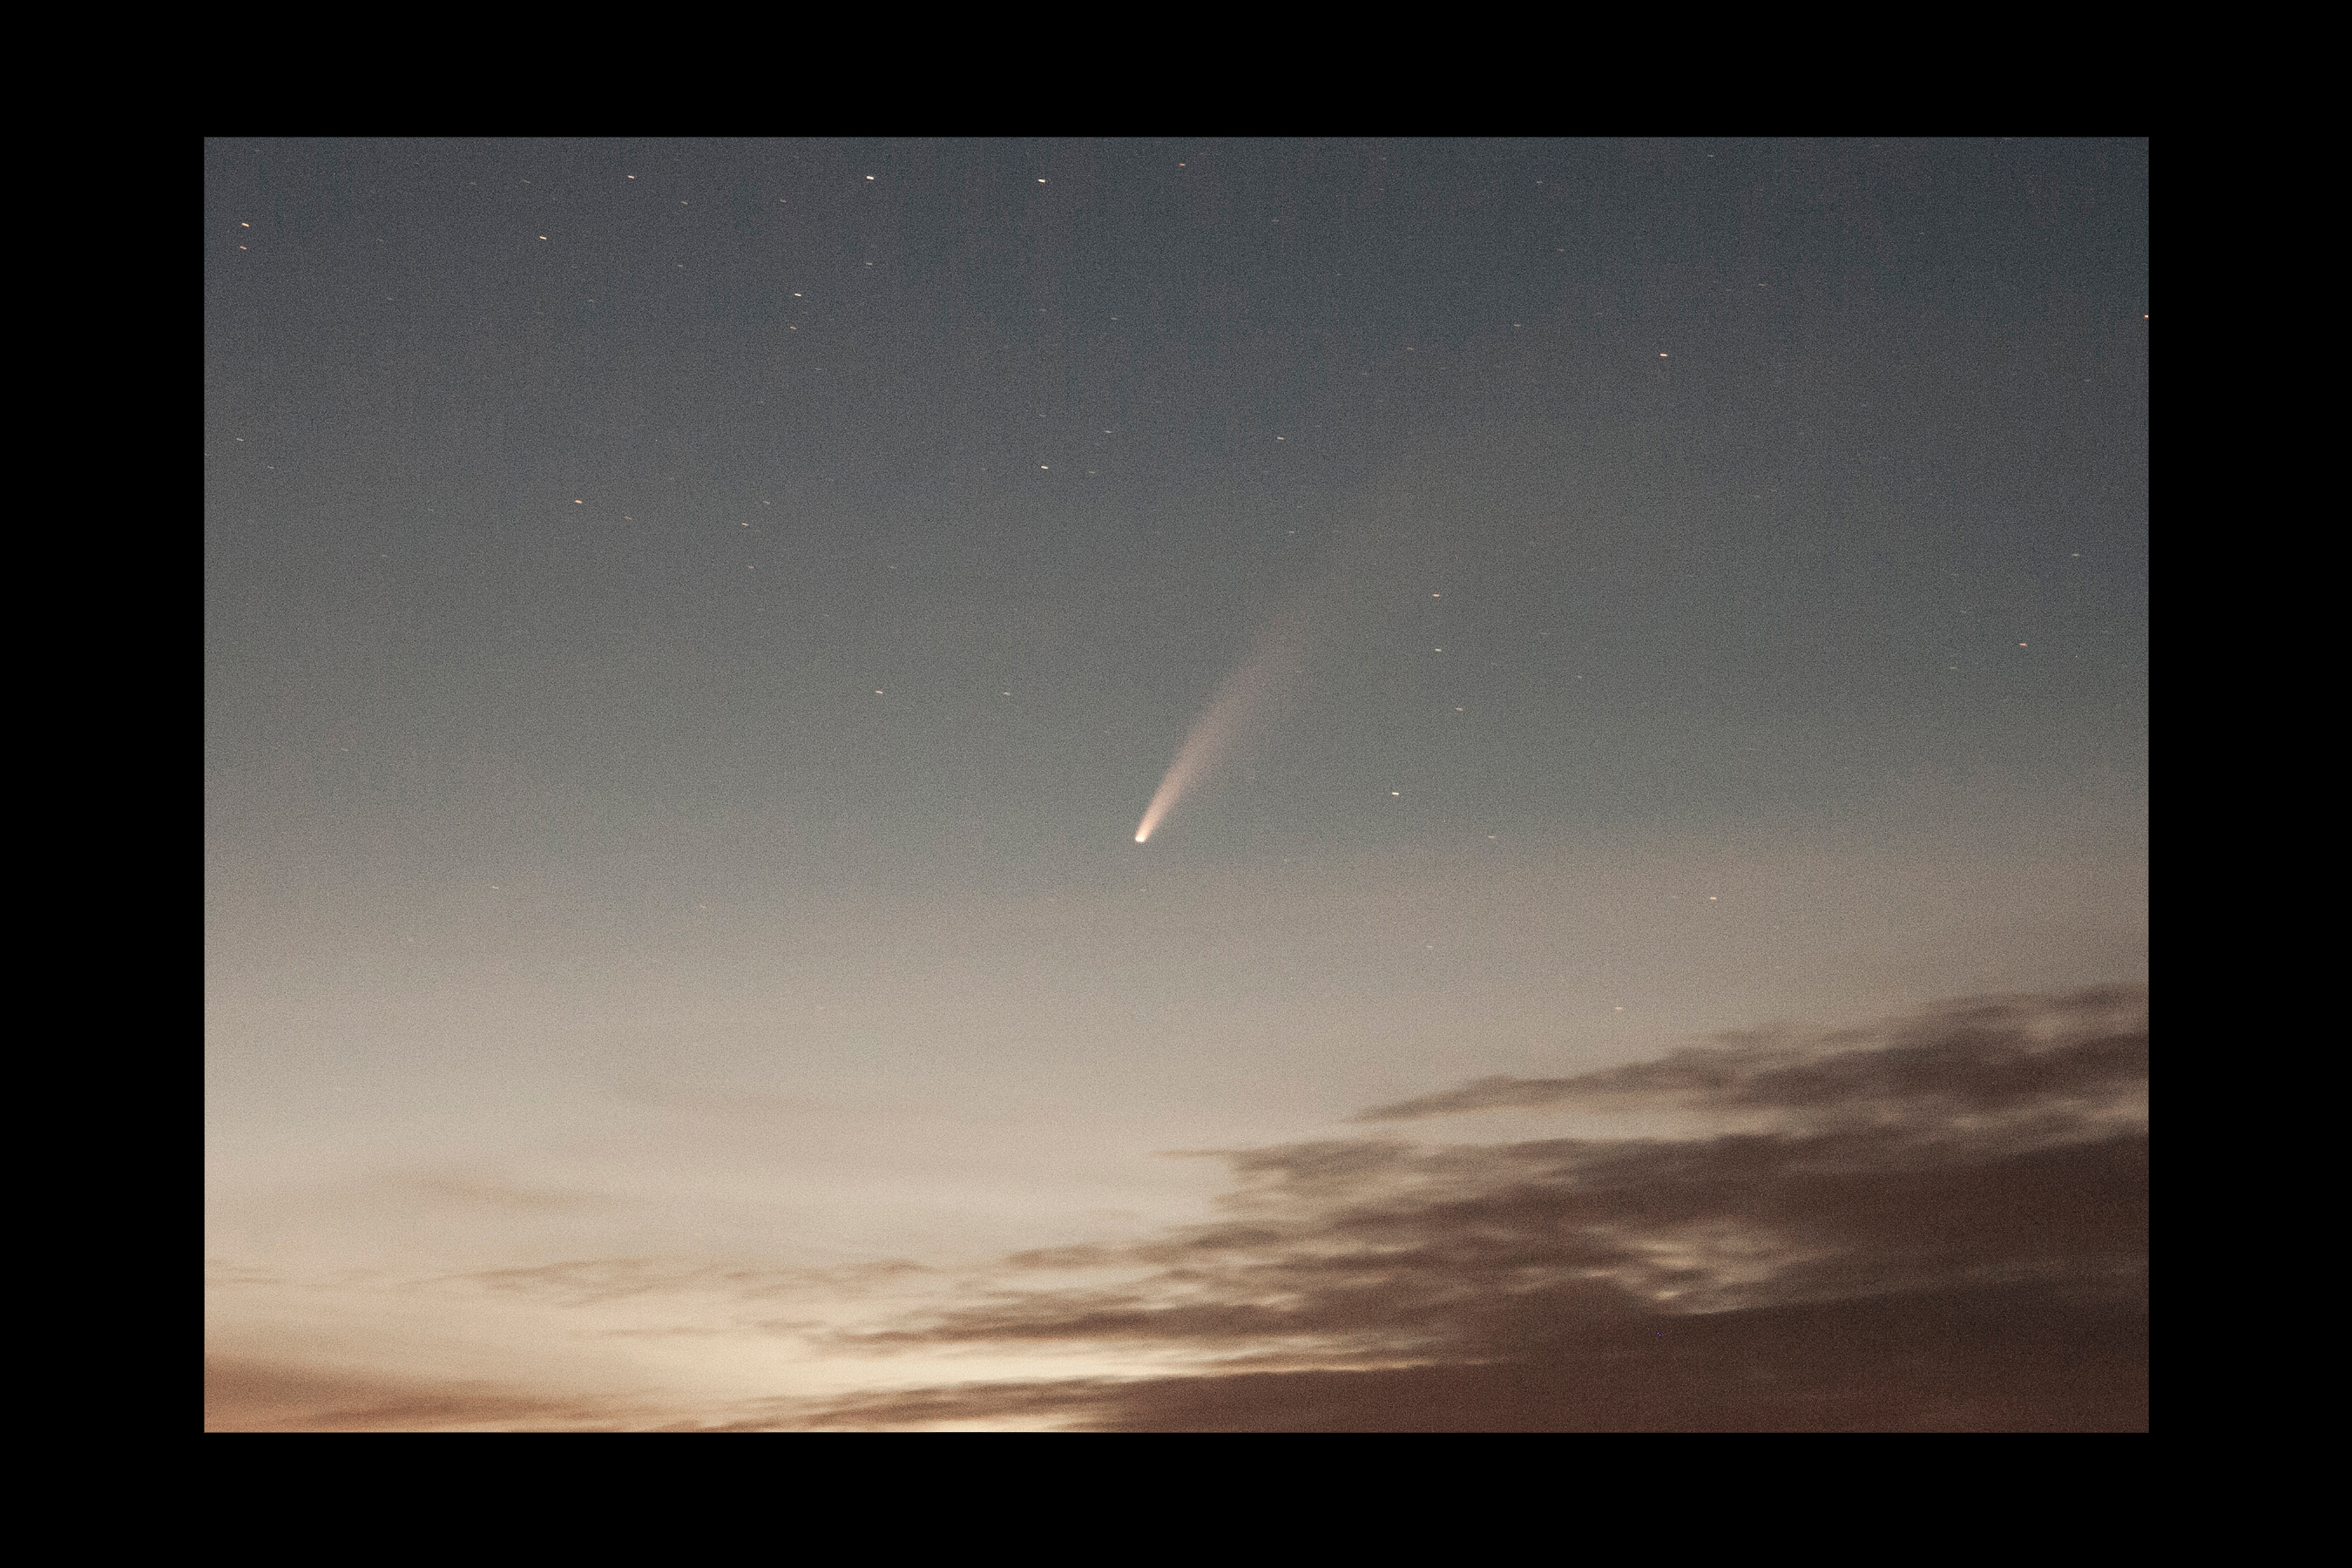 komeet neowise 2020-07-12.jpg